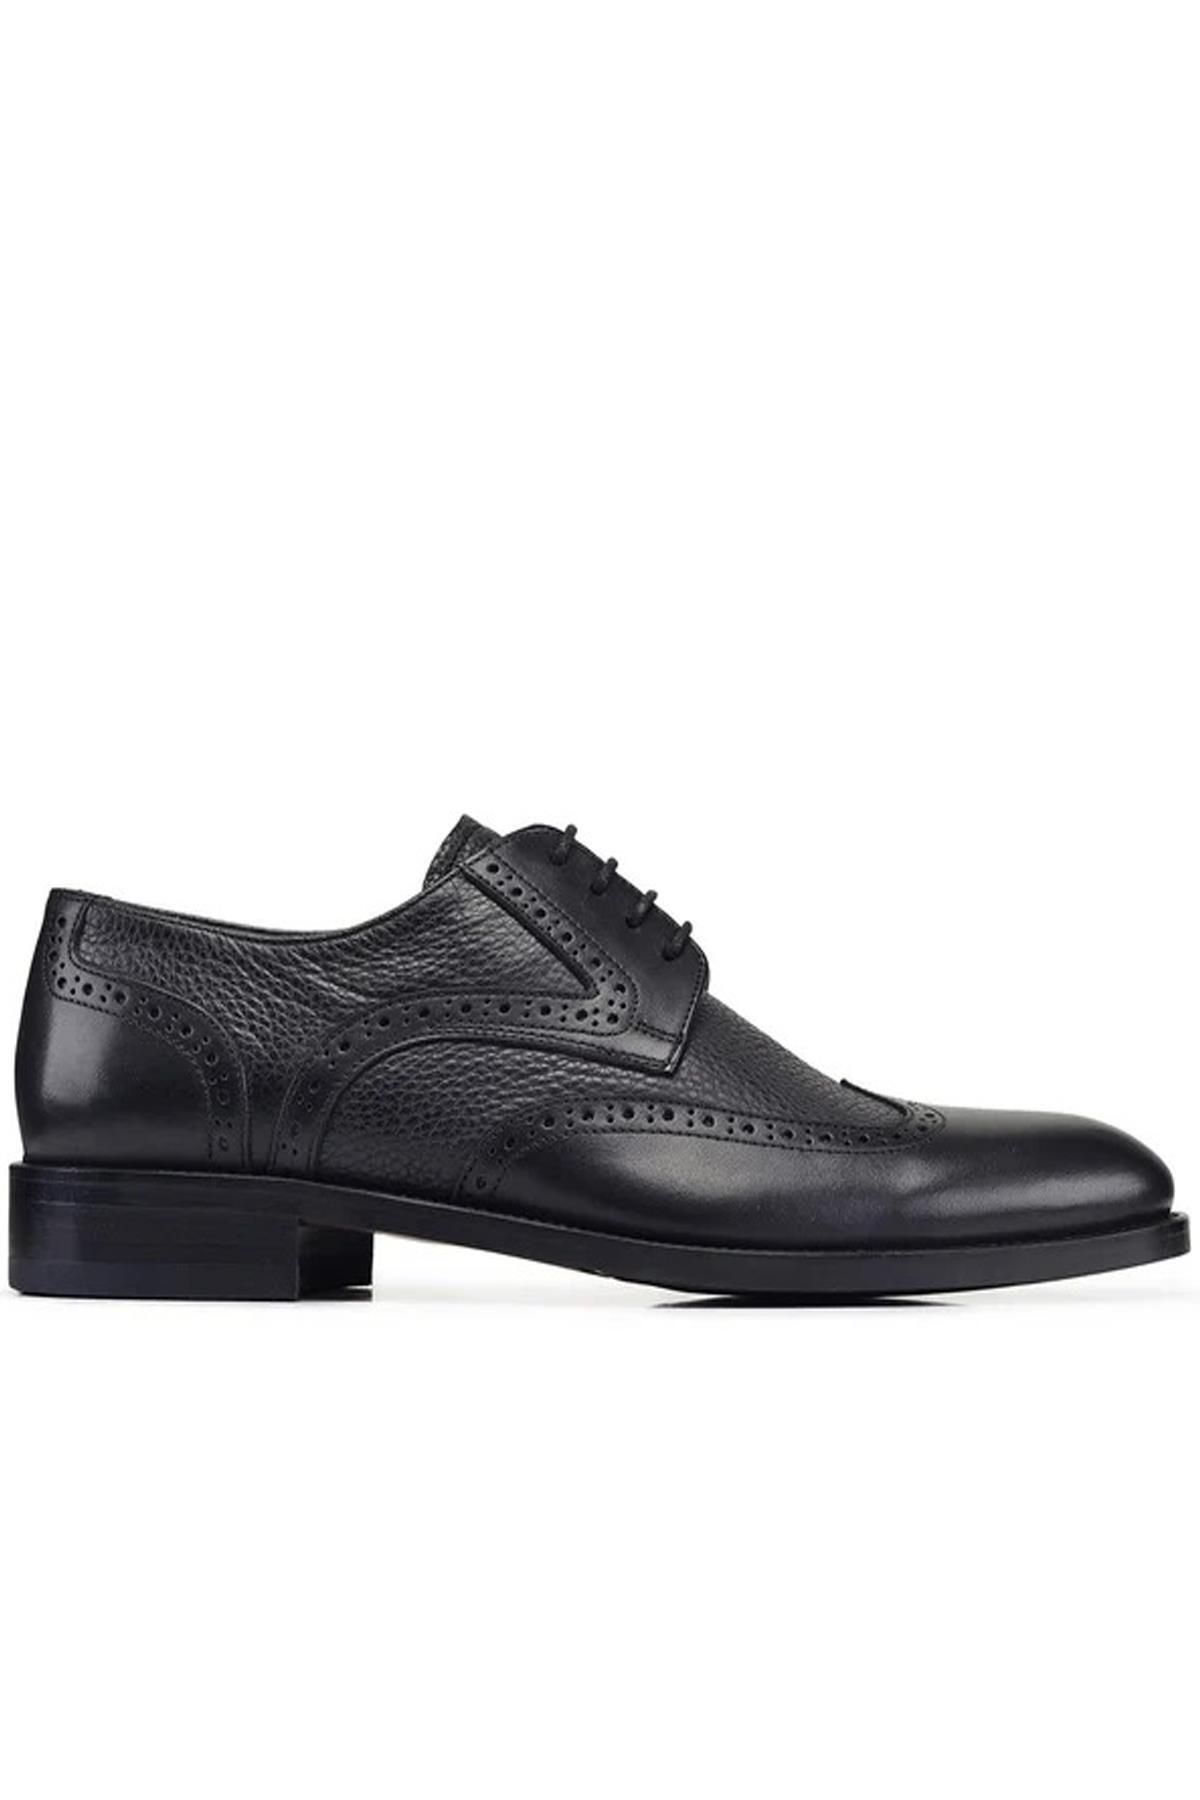 Nevzat Onay L4145-530 Erkek Klasik Ayakkabı - Siyah